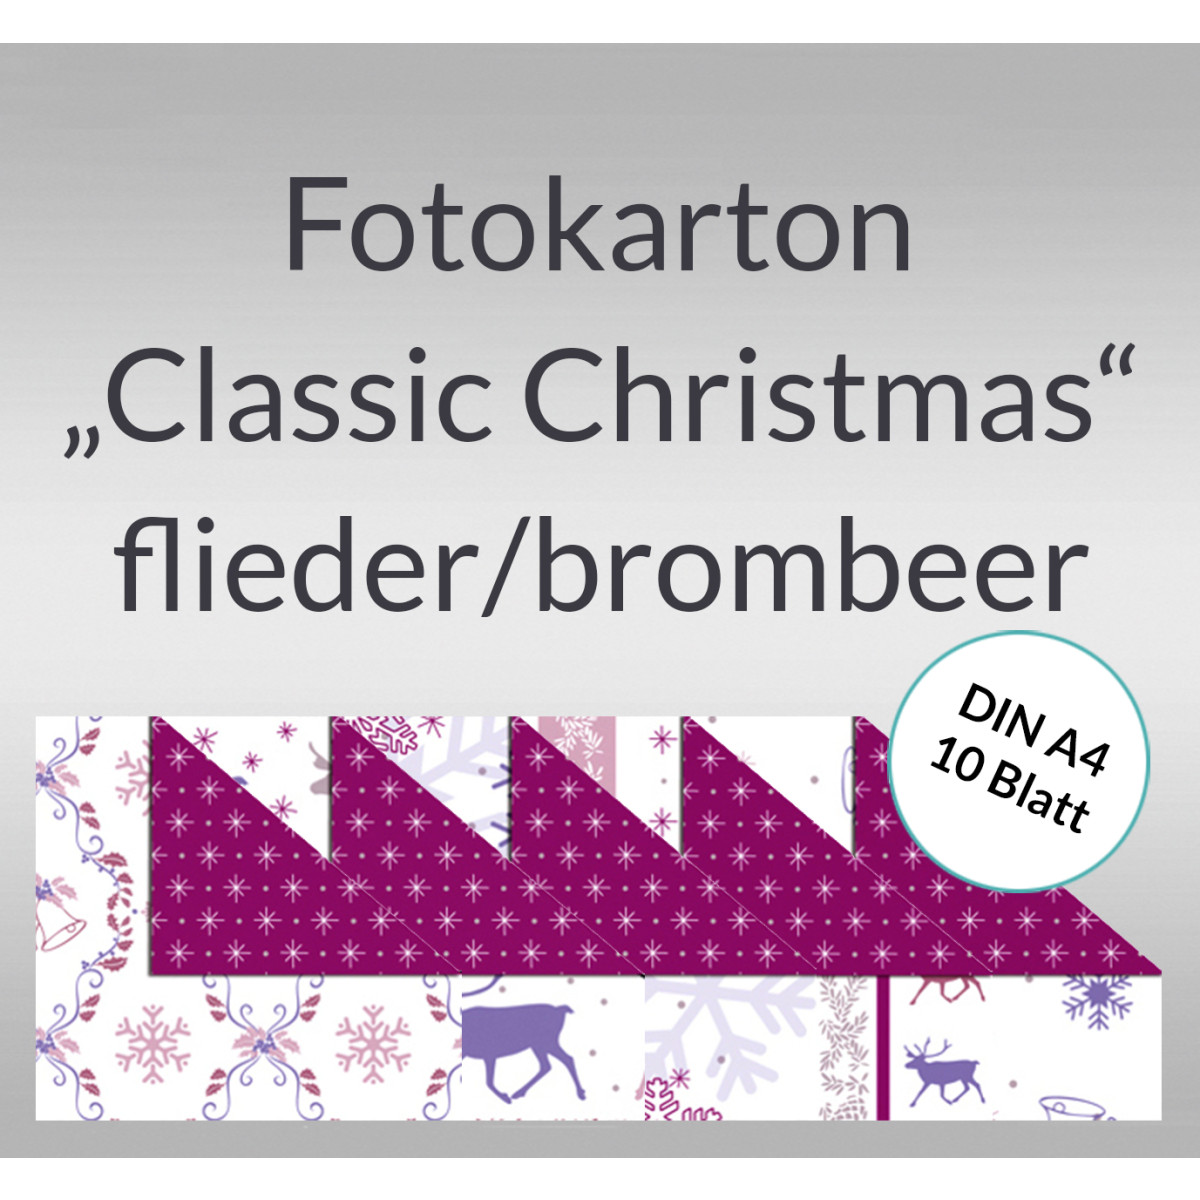 Fotokarton "Classic Christmas" flieder/brombeer DIN A4 - 10 Blatt